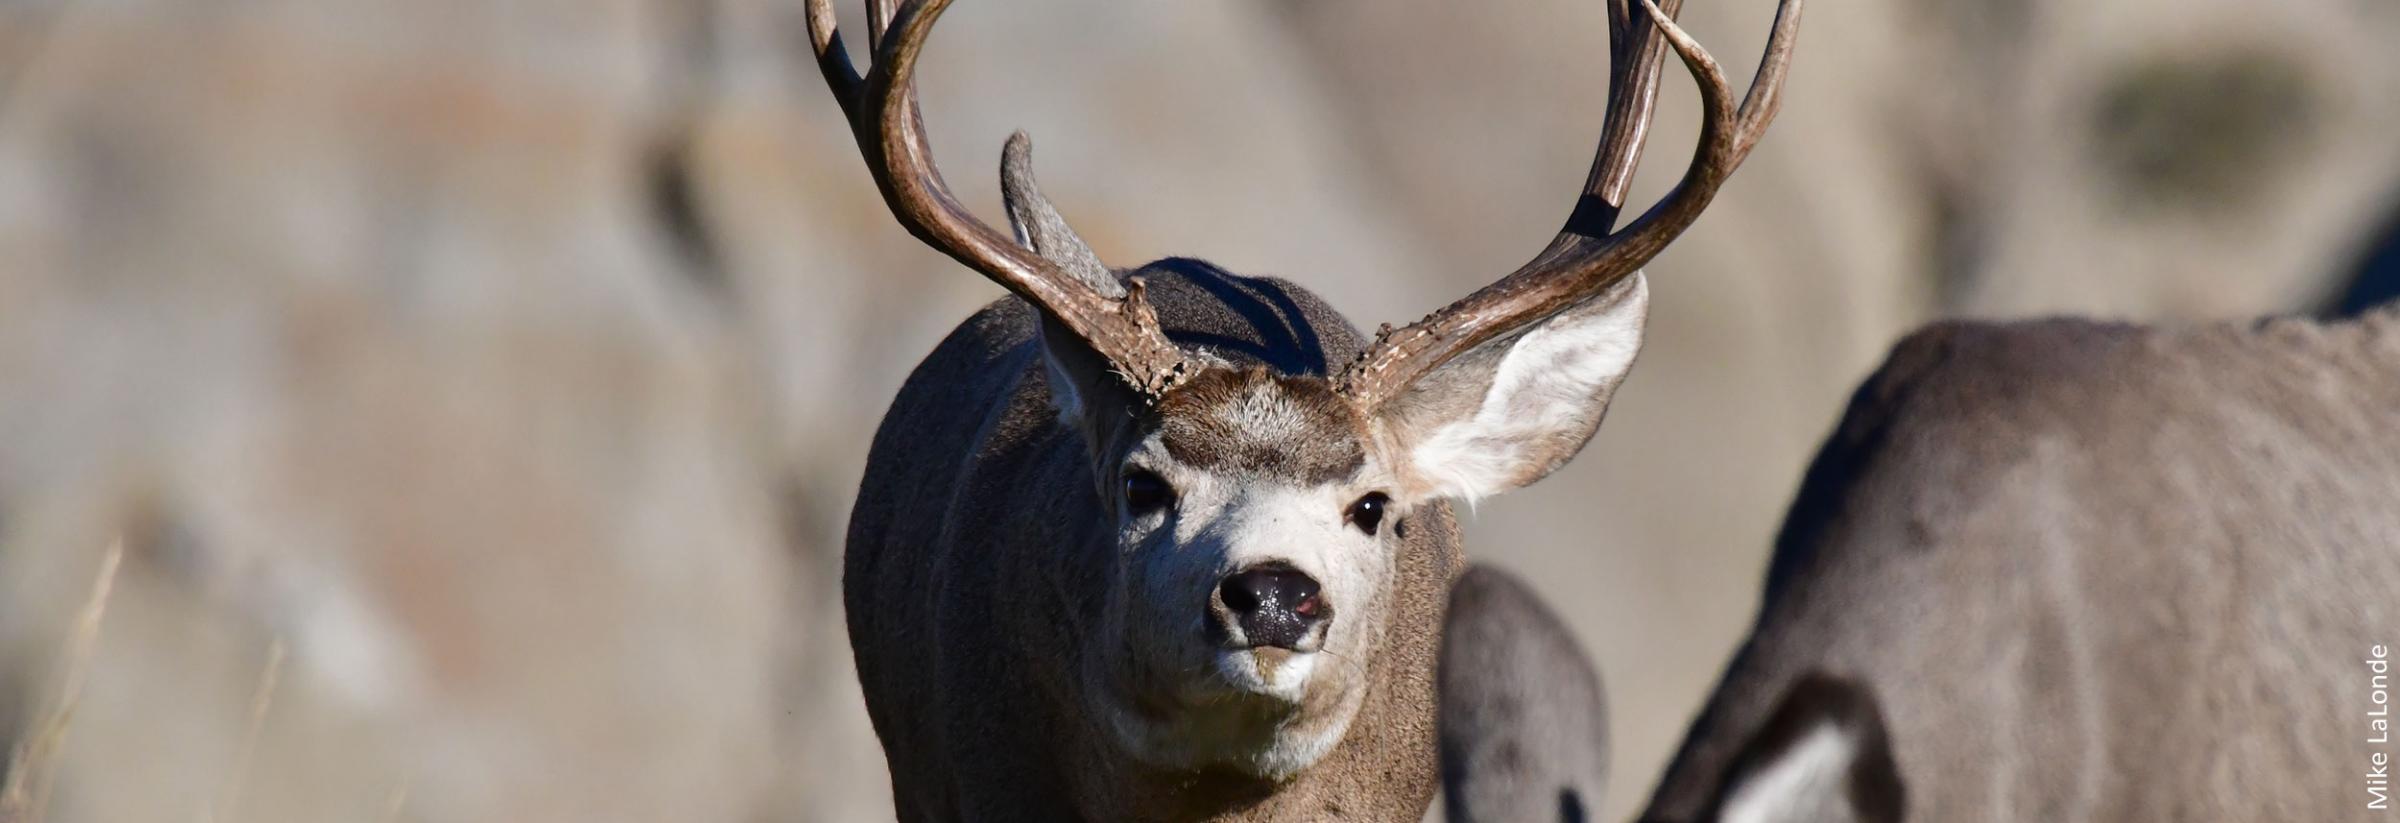 Mule deer buck